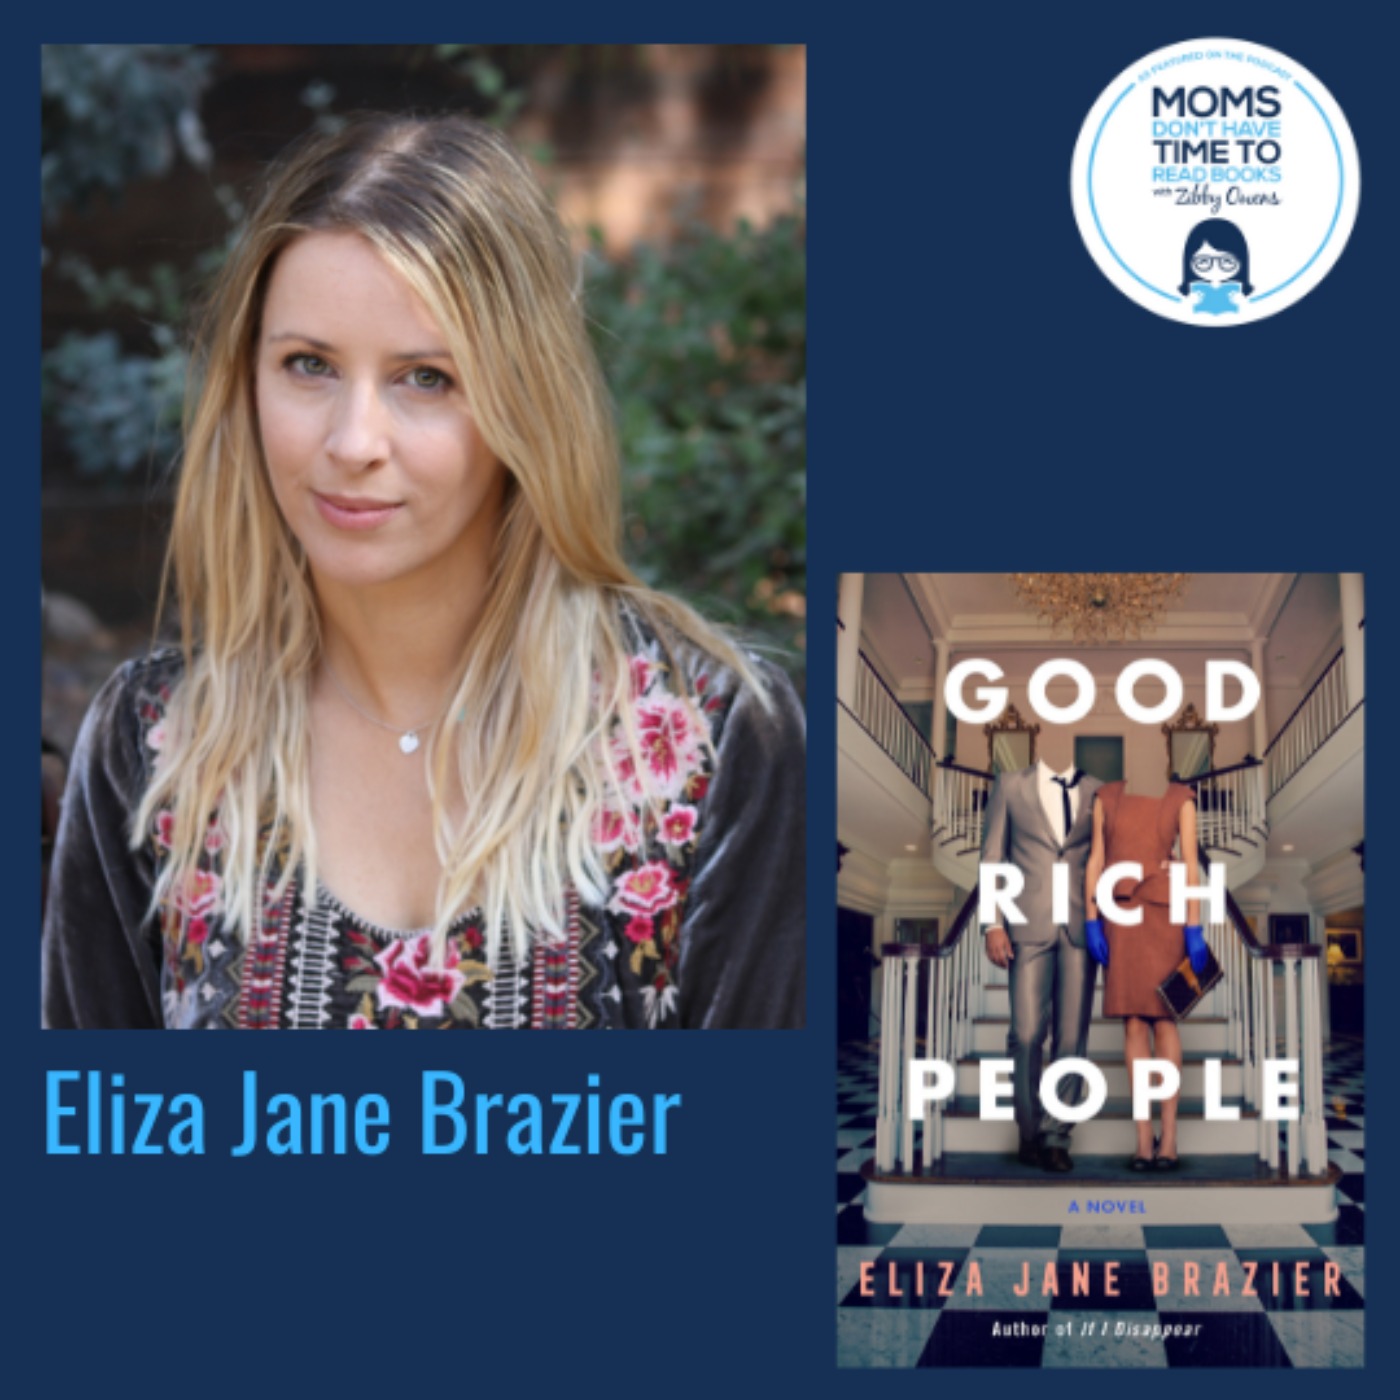 Eliza Jane Brazier, GOOD RICH PEOPLE